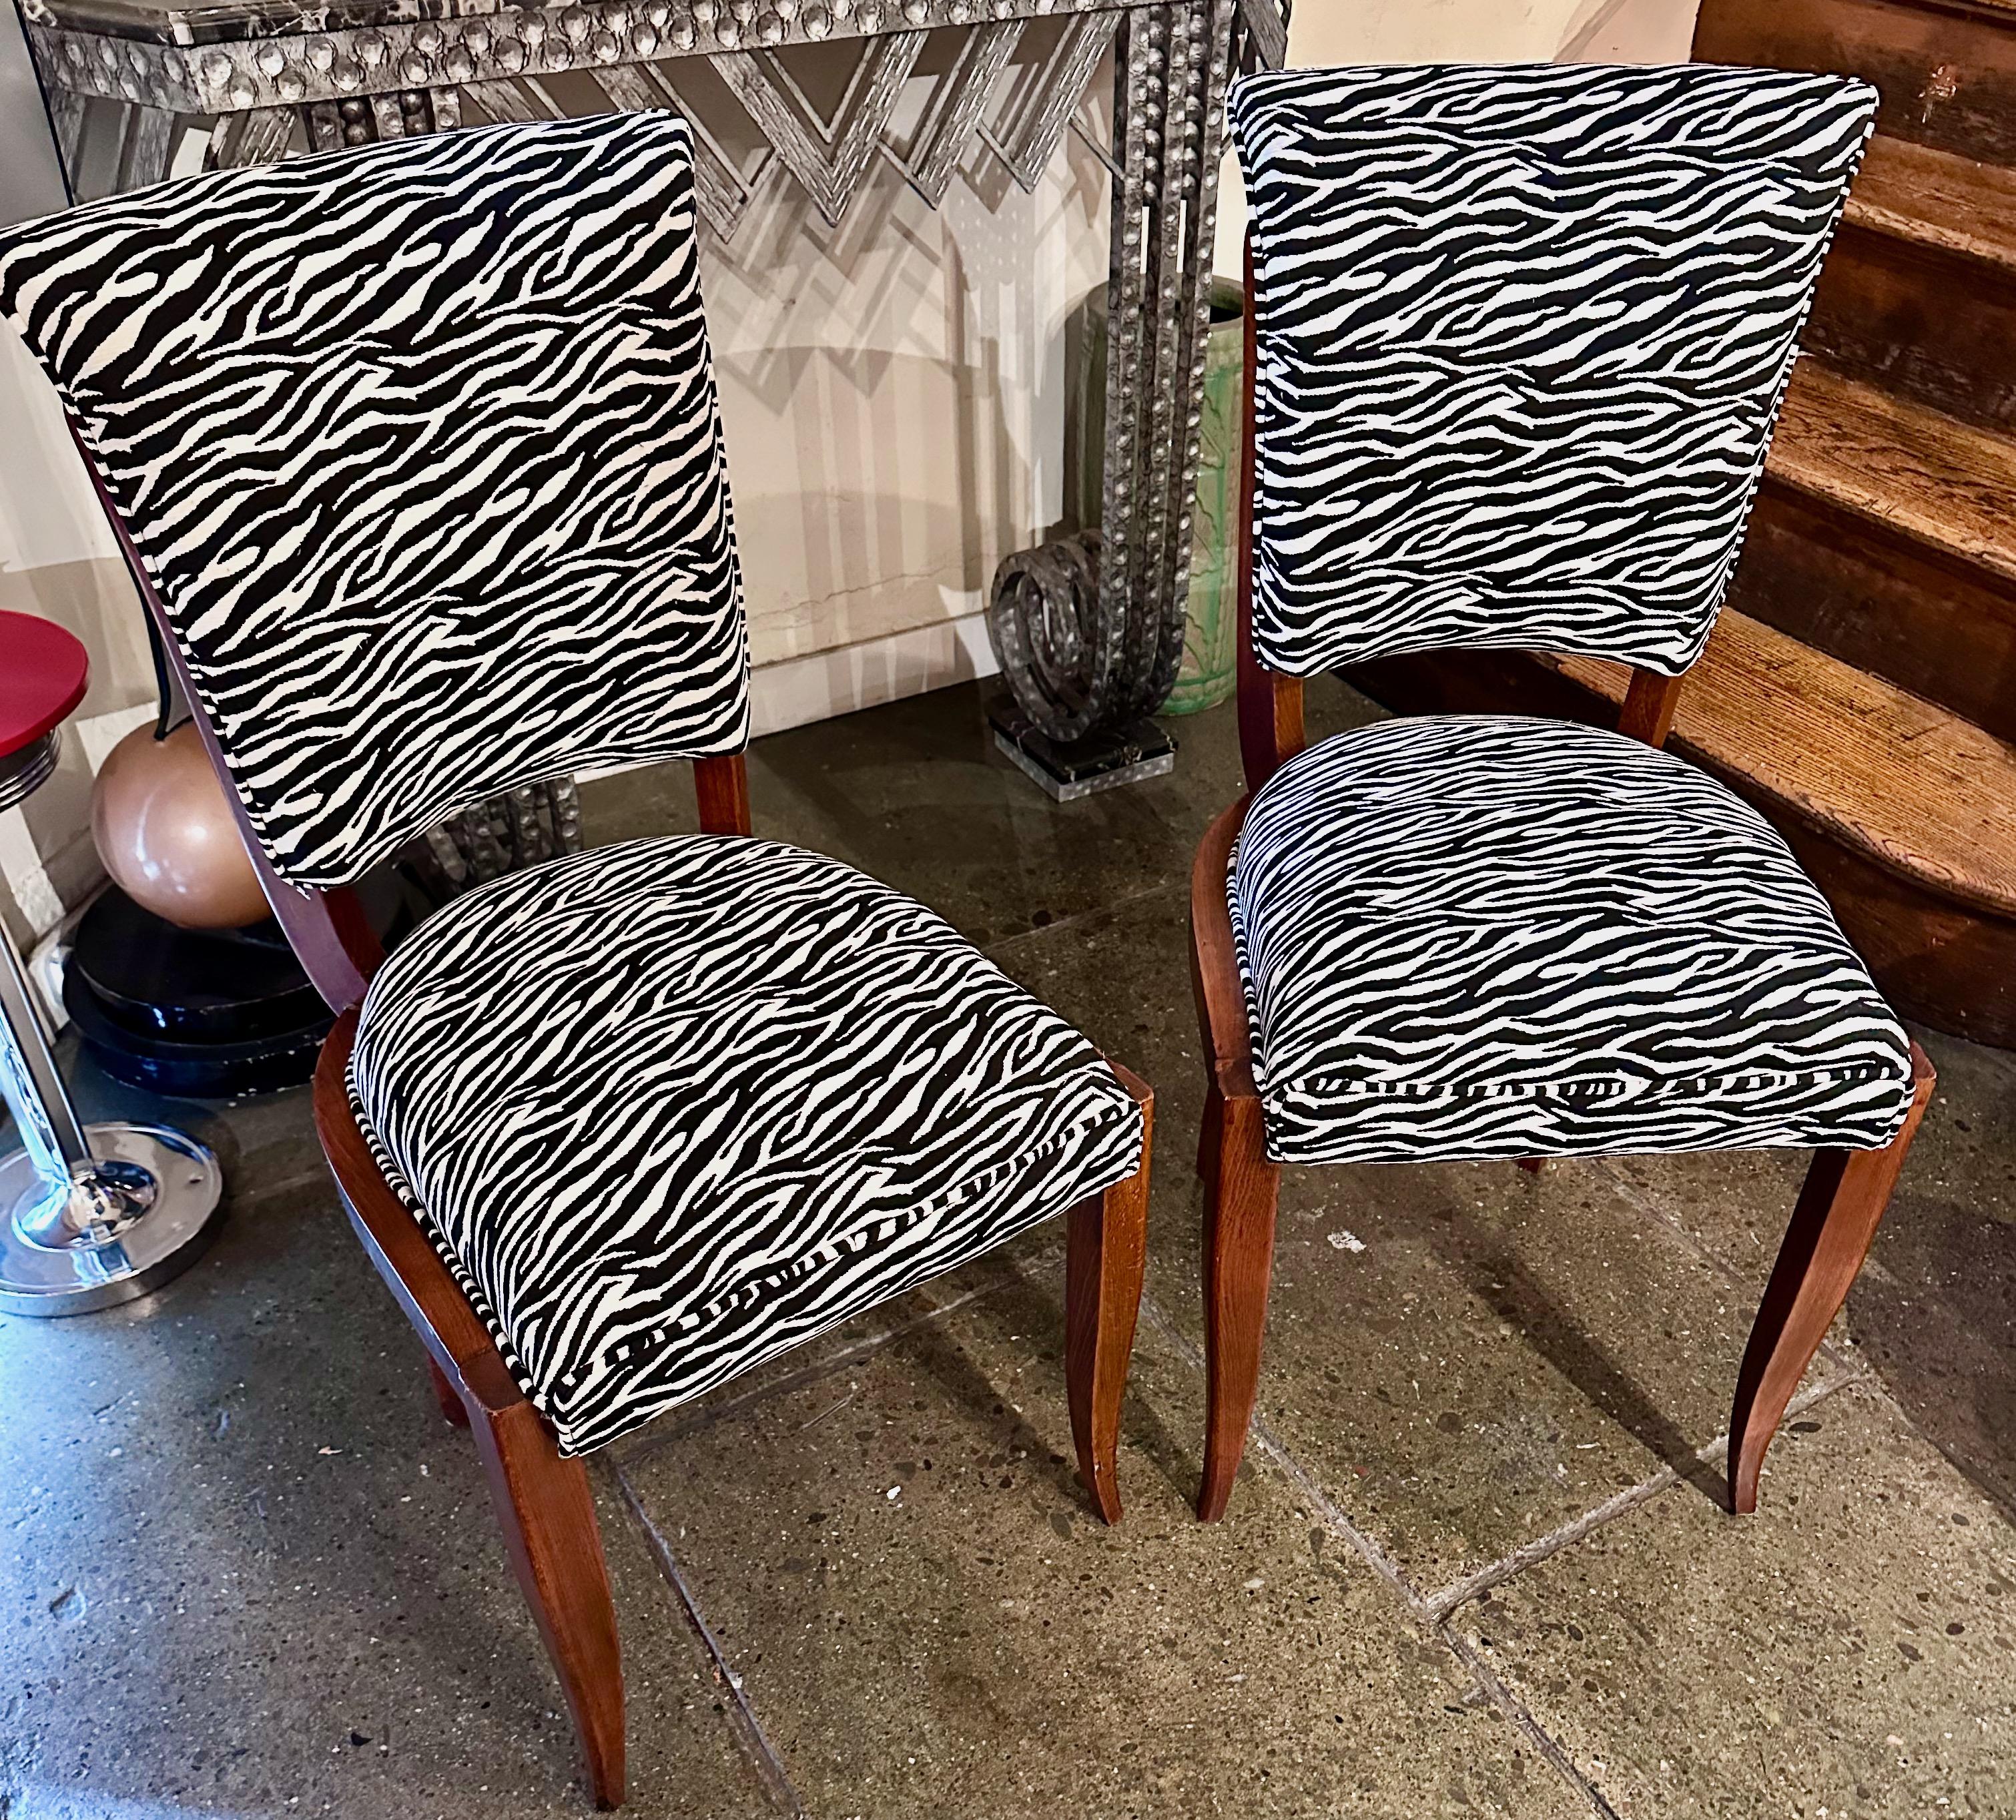 Paire de chaises d'appoint de style zébré Art déco est un superbe ensemble de deux chaises de la période Art déco. Ces chaises sont dotées d'un cadre en bois de Mahagonny apparent qui a été rénové pour faire ressortir sa beauté d'origine.

Les